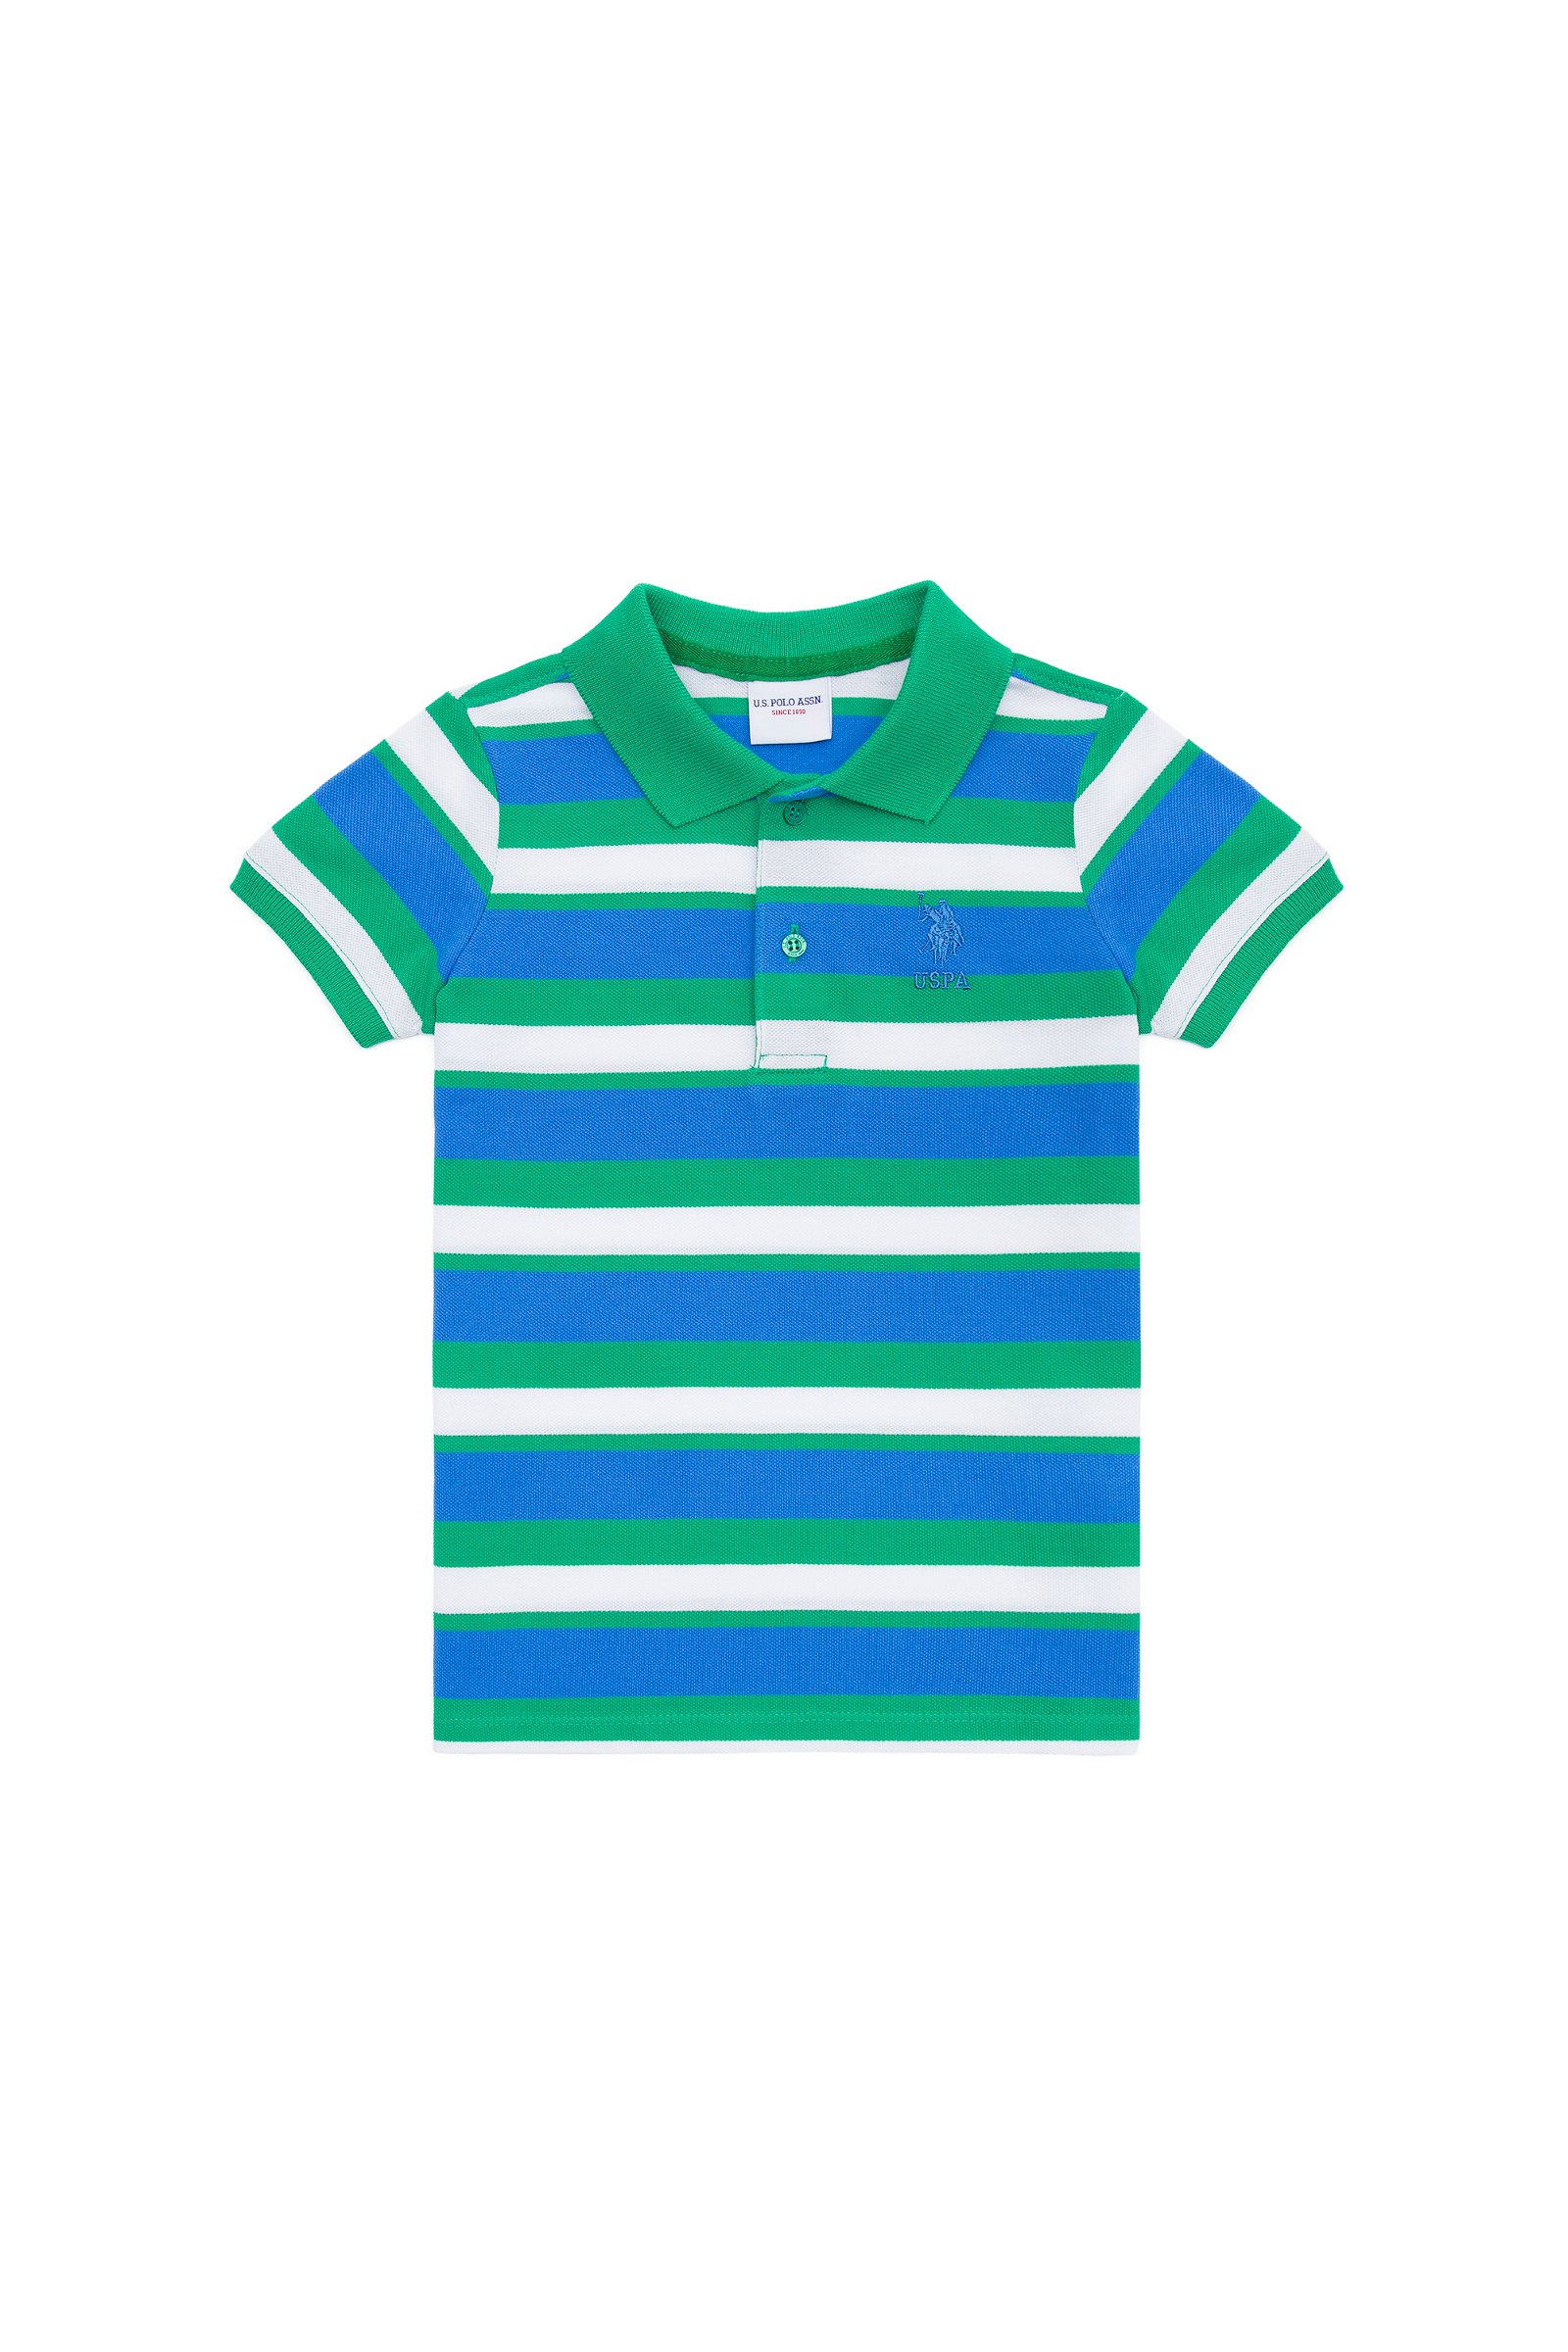 تی شرت  سبز  استاندارد فیت  پسرانه یو اس پولو | US POLO ASSN